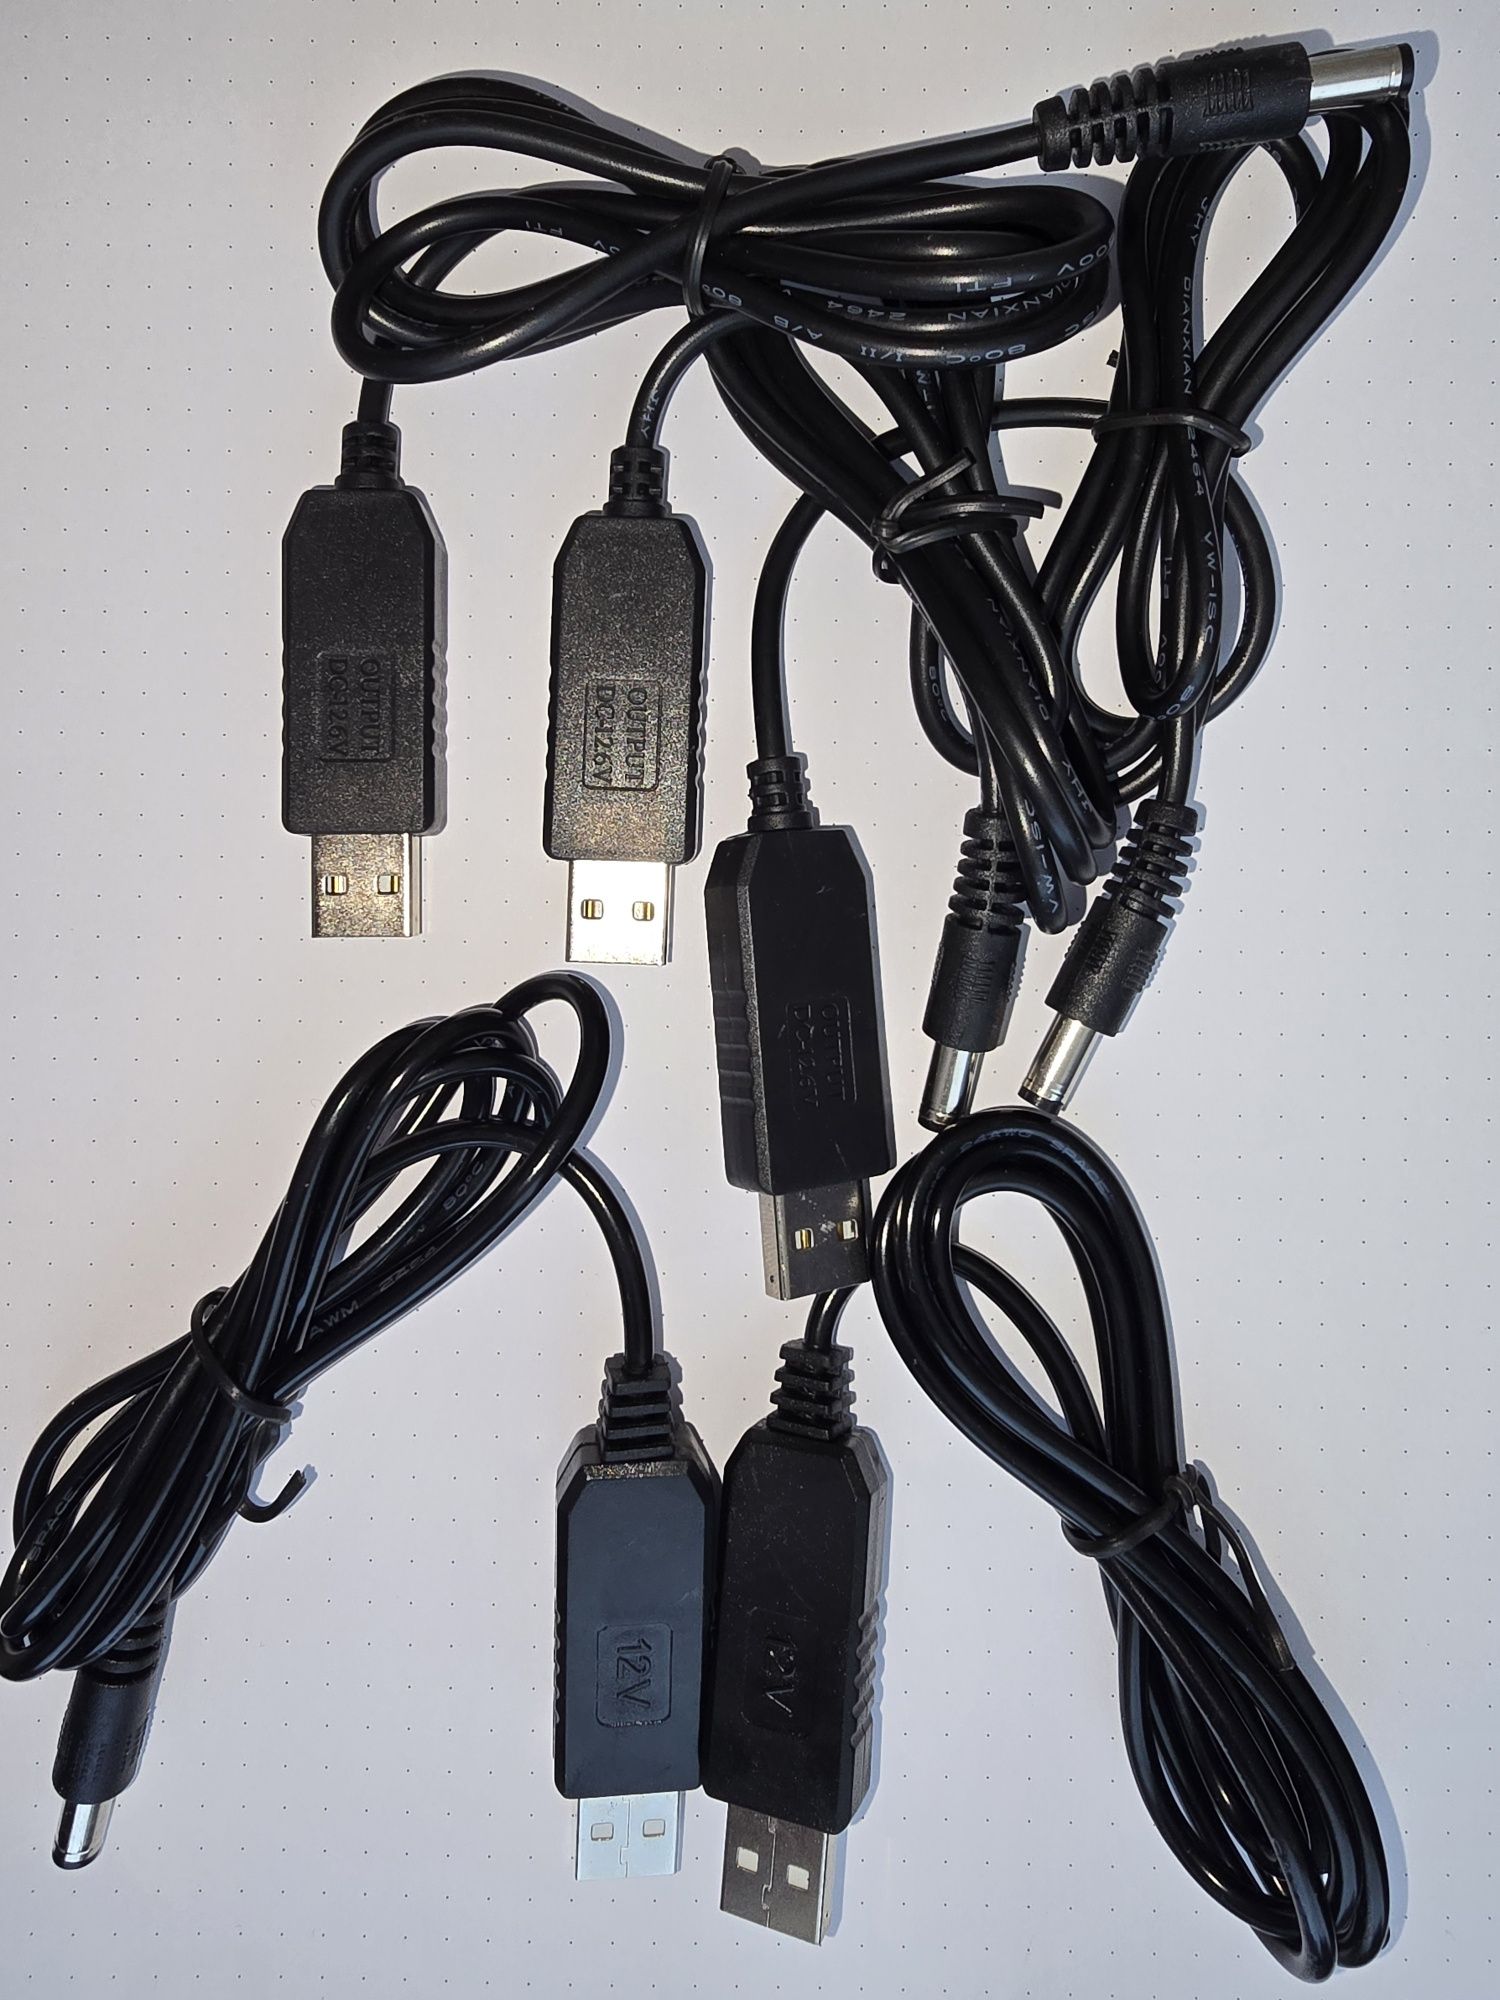 Шнур для роутера від USB. Роутер працює від павербанка, або ноутбука.